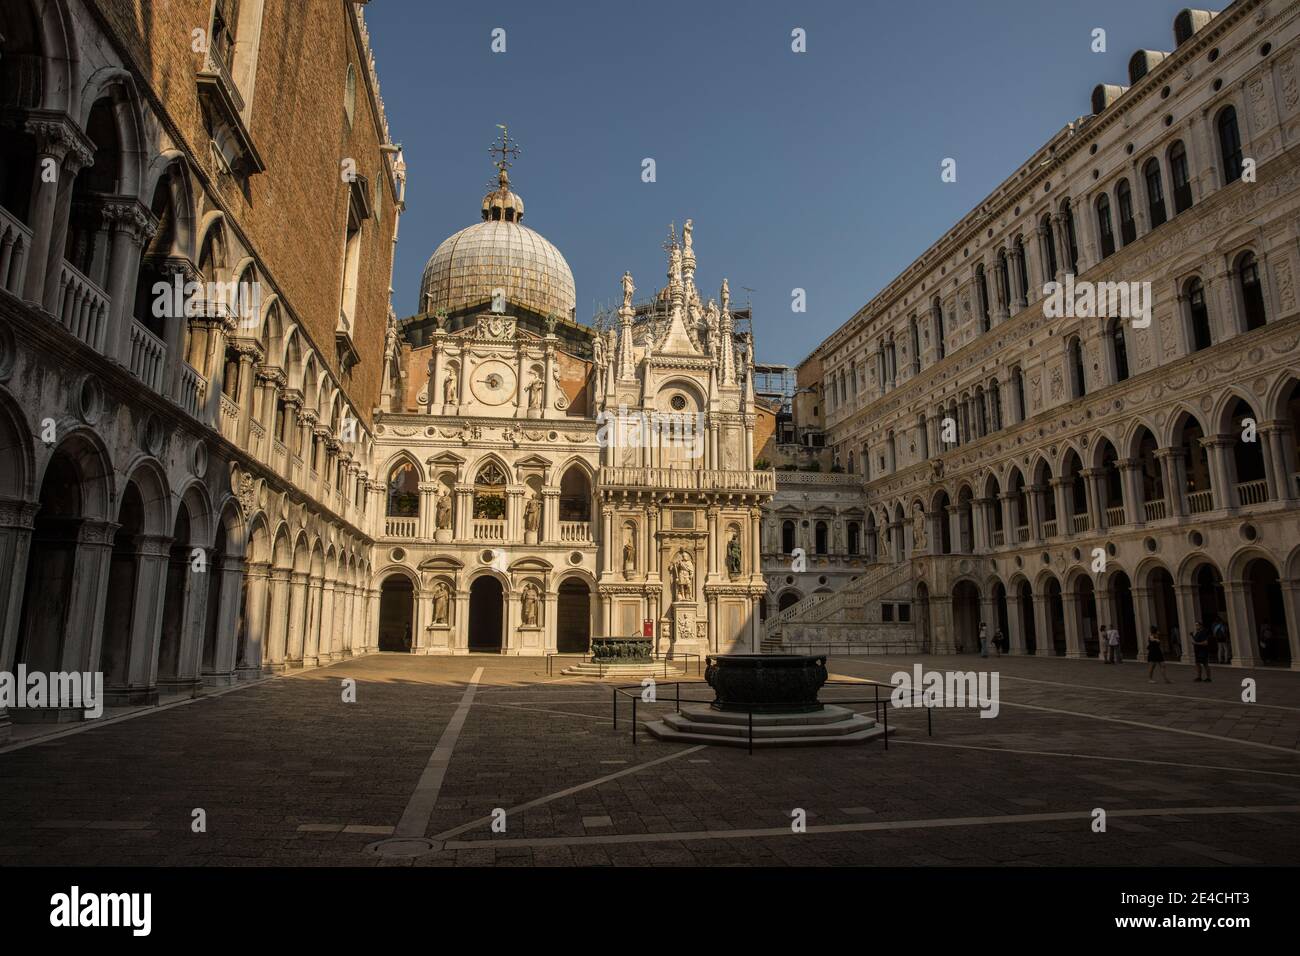 Venise pendant les temps de Corona sans touristes, cour intérieure du Palais des Doges Banque D'Images